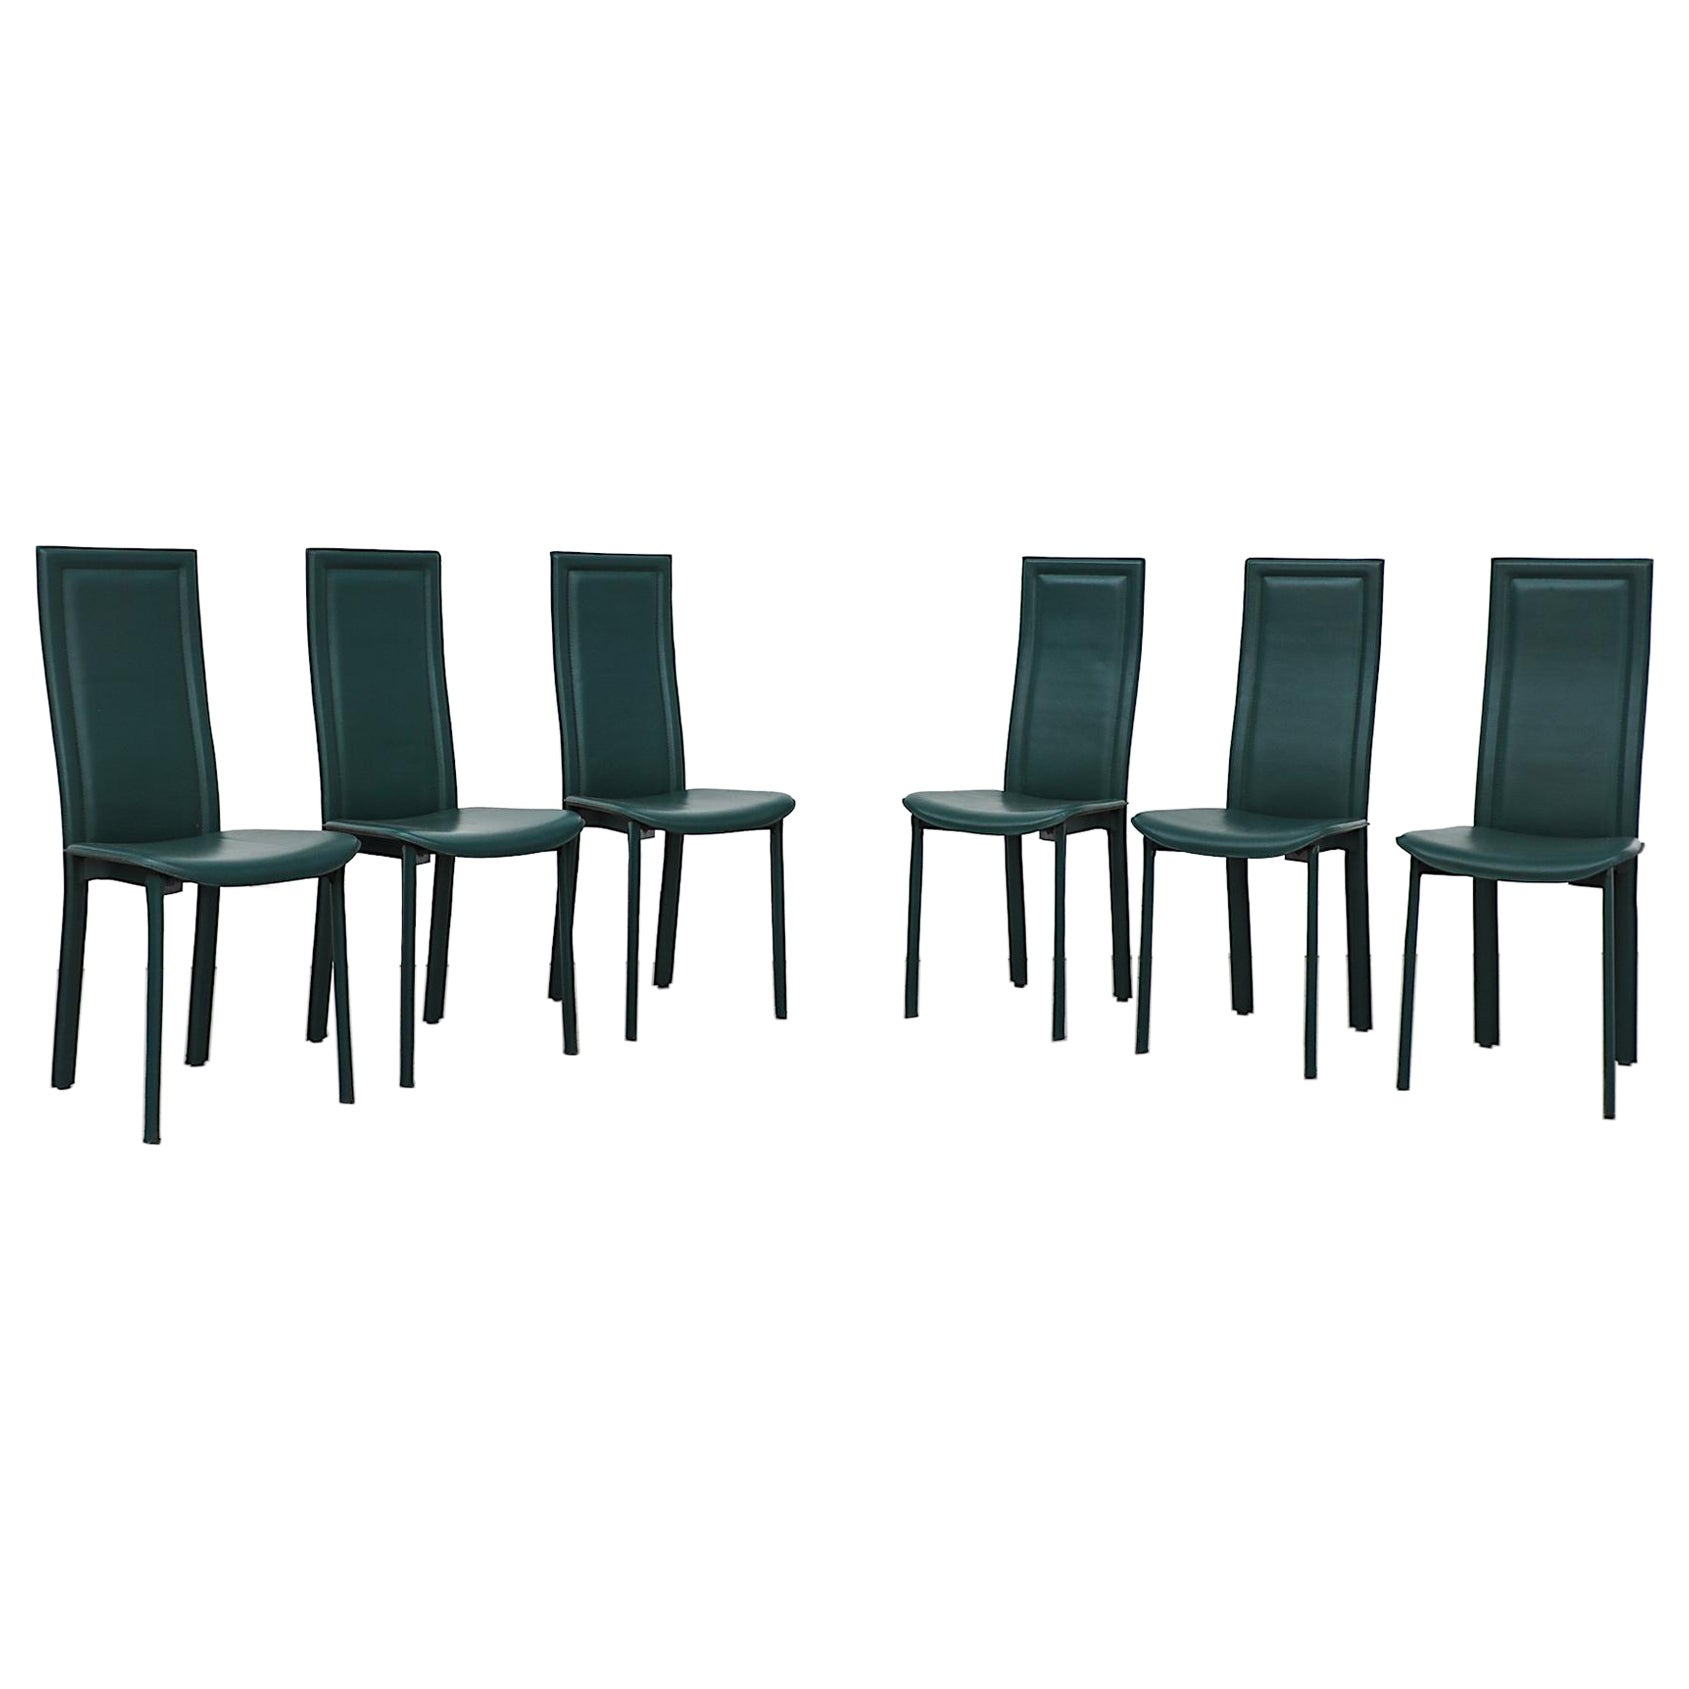 Satz von 6 Cattelan Italia-Stühlen aus grünem Leder mit hoher Rückenlehne